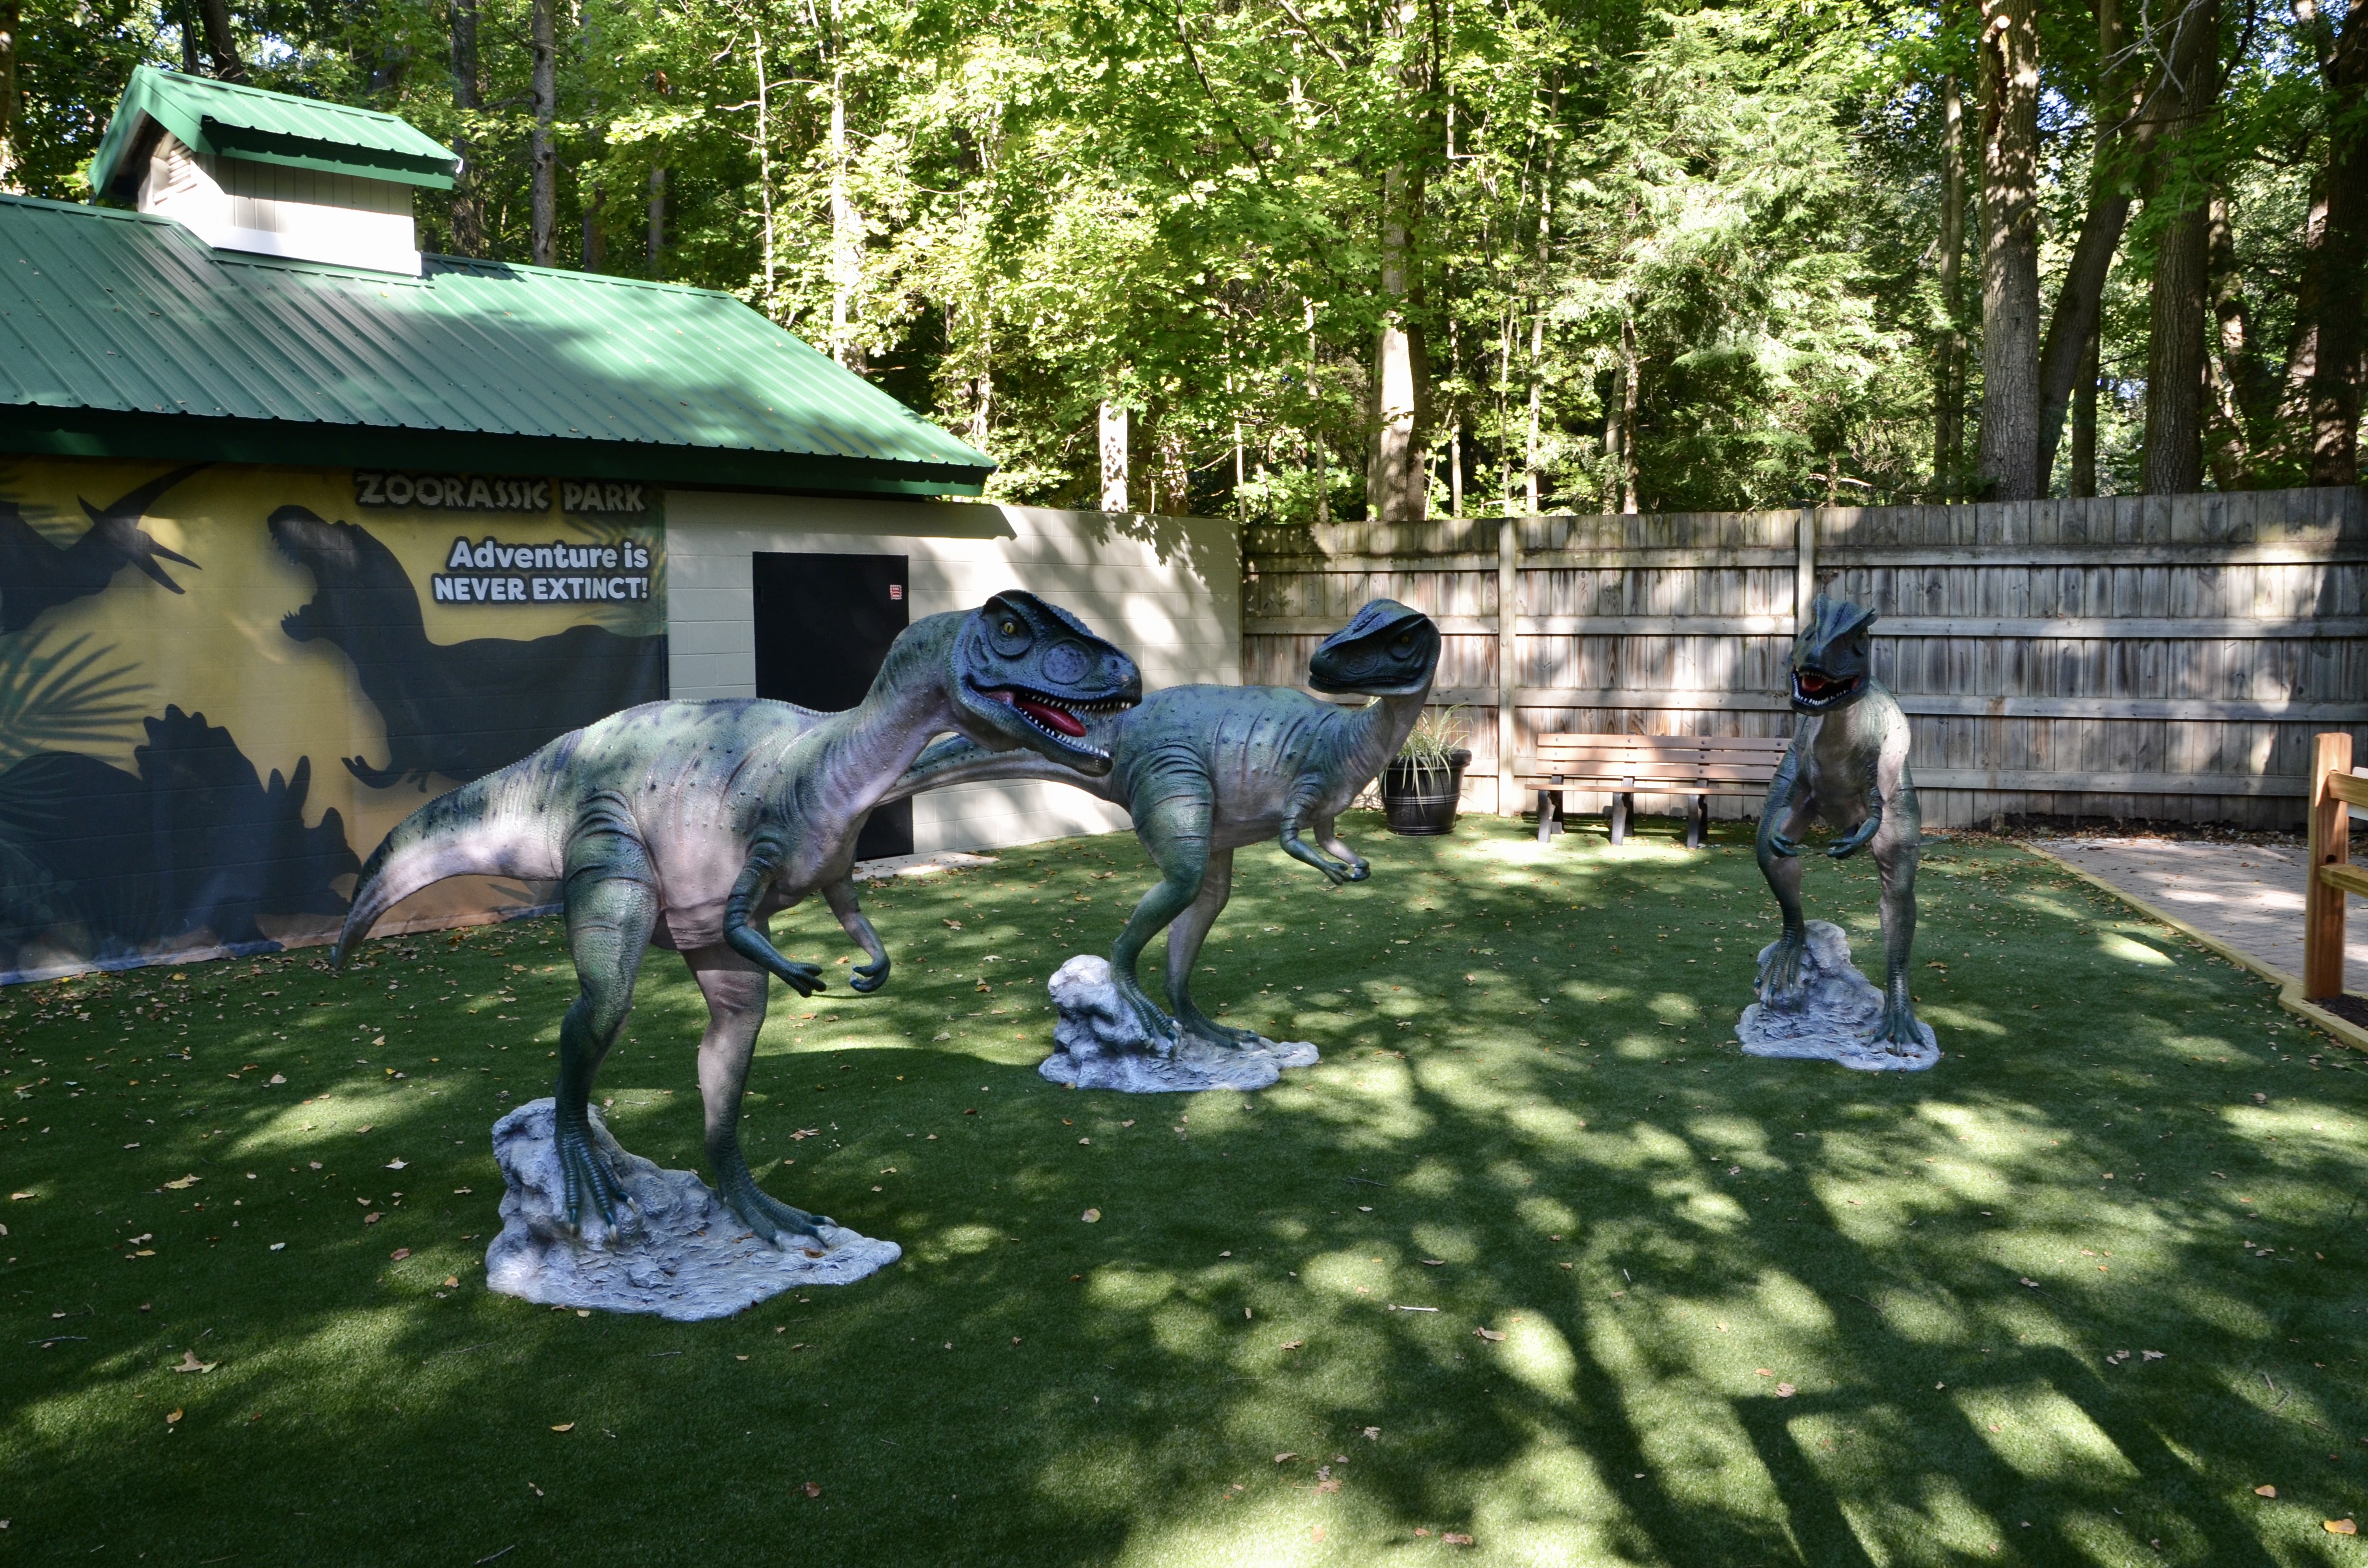 Zoorassic Park Binder Park Zoo Allosaurus Trio